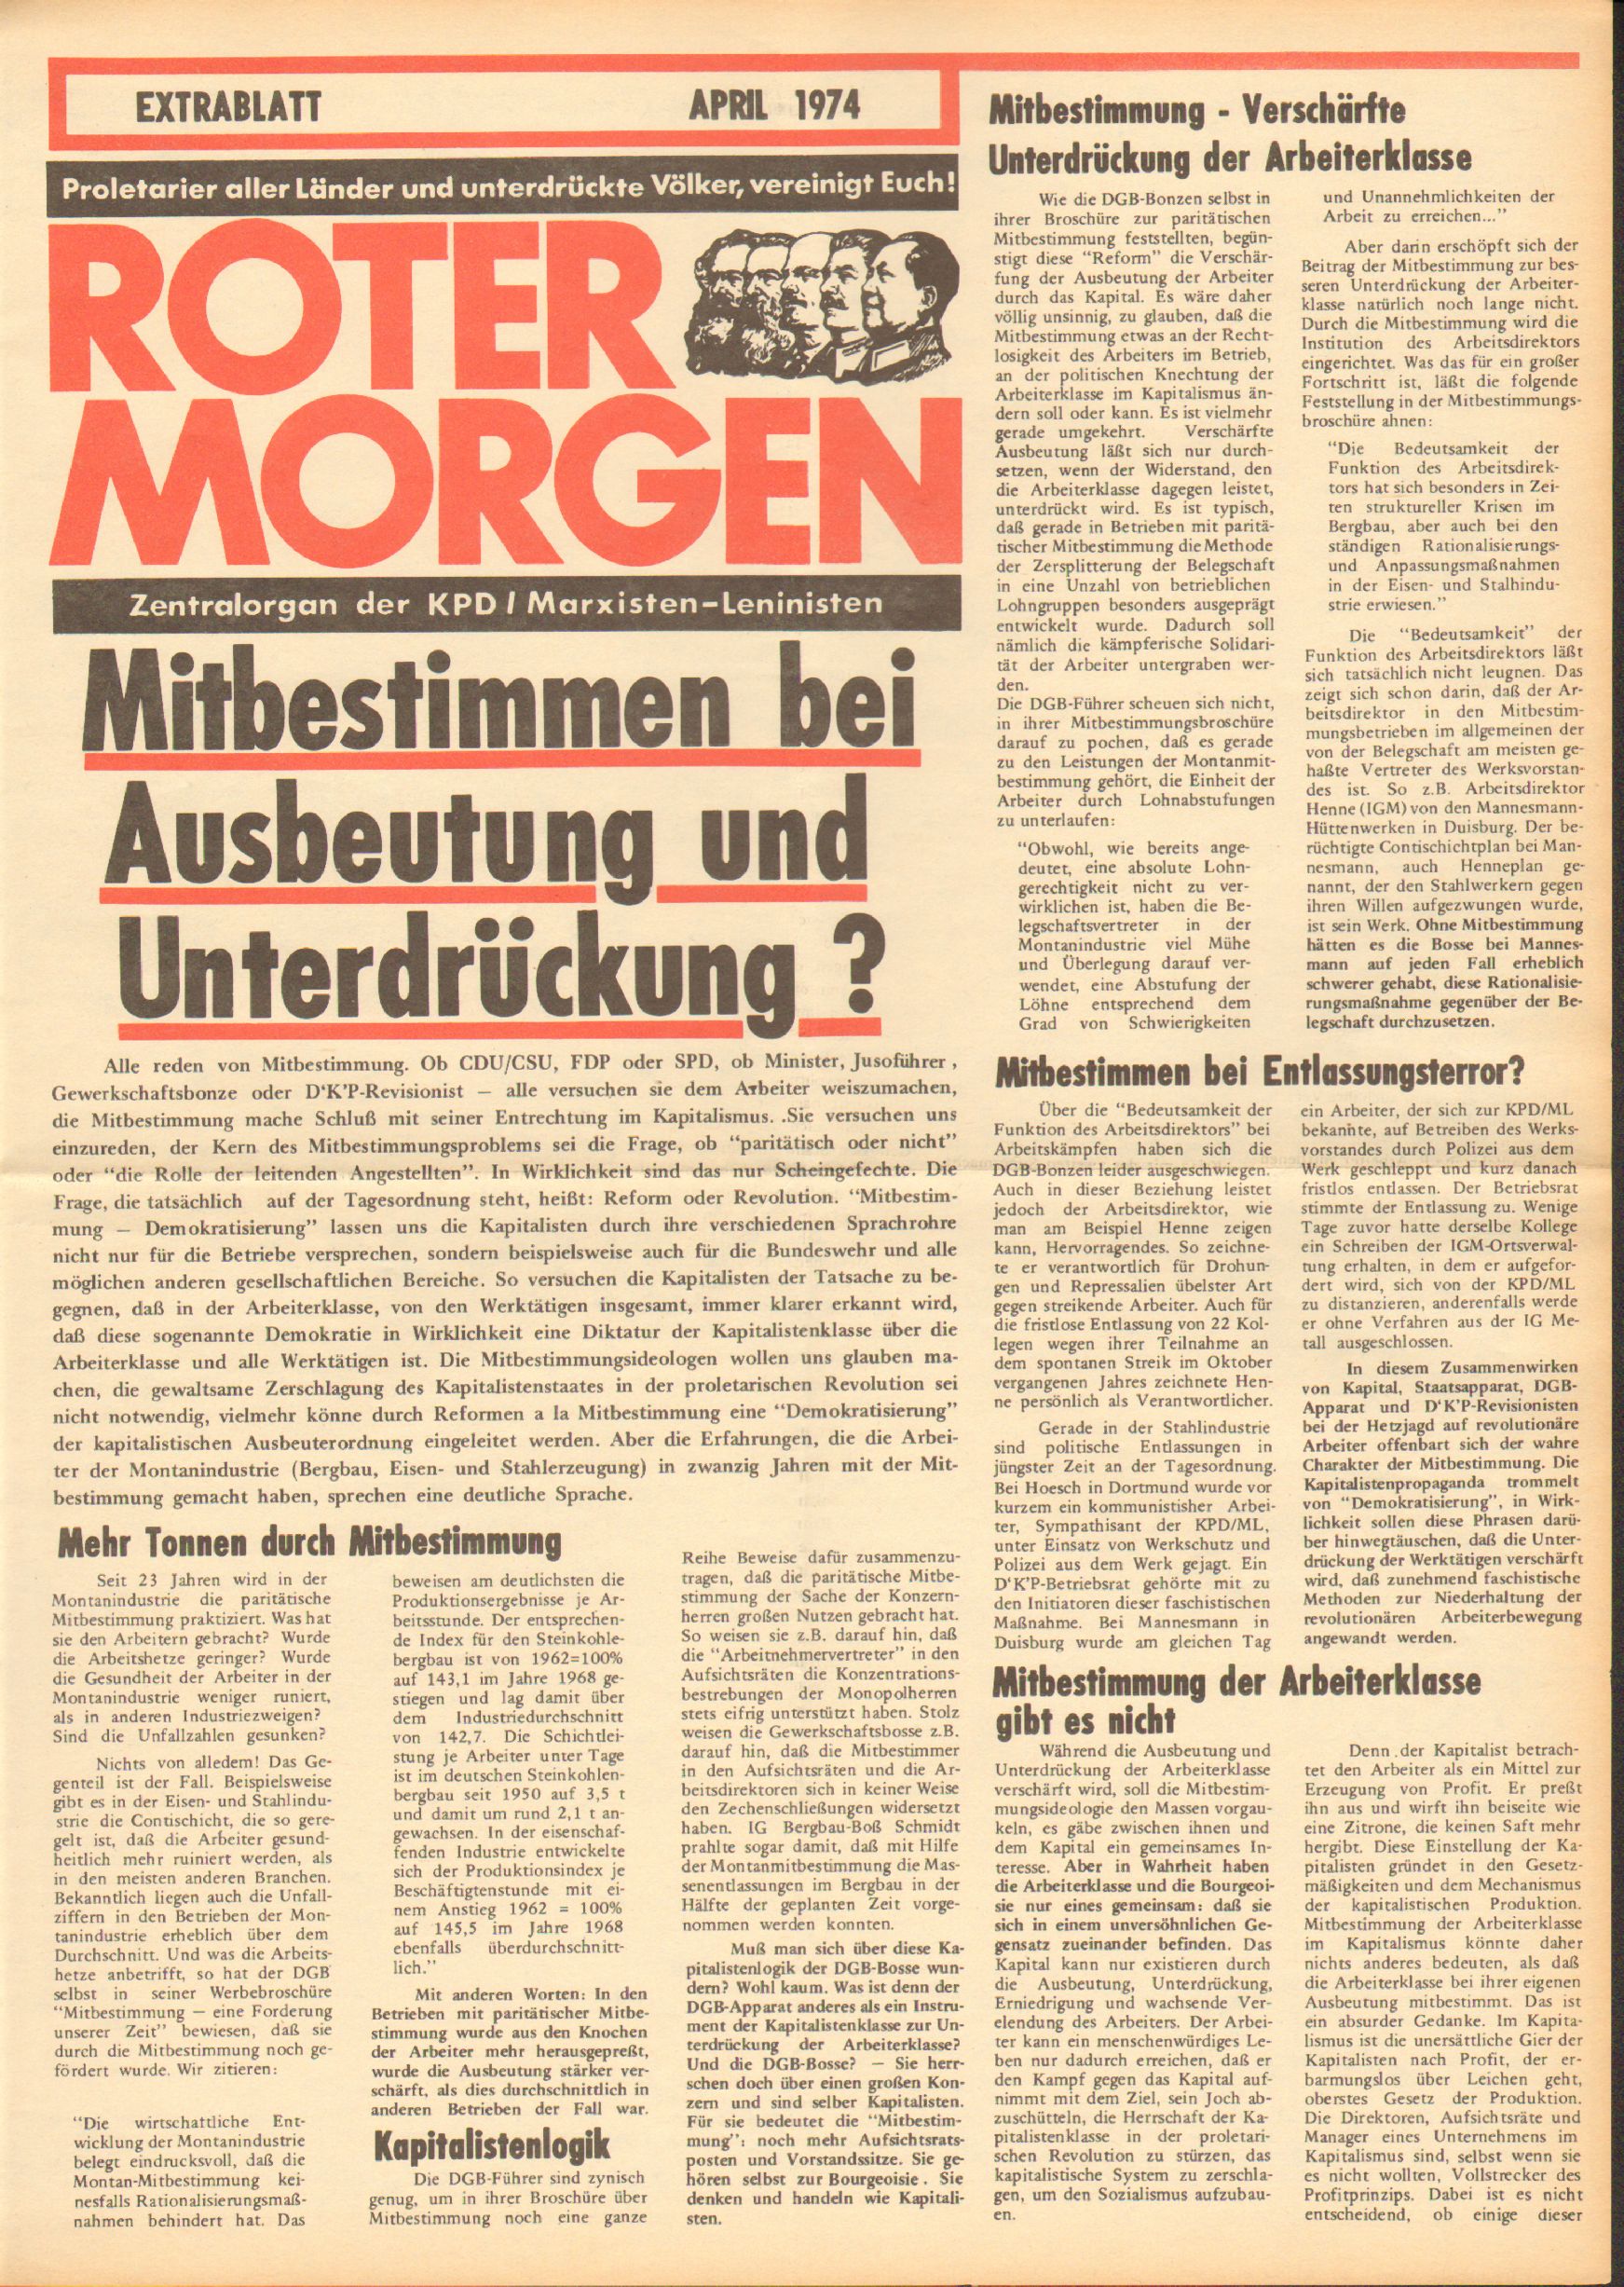 Roter Morgen, 8. Jg., April 1974, Extrablatt, Seite 1